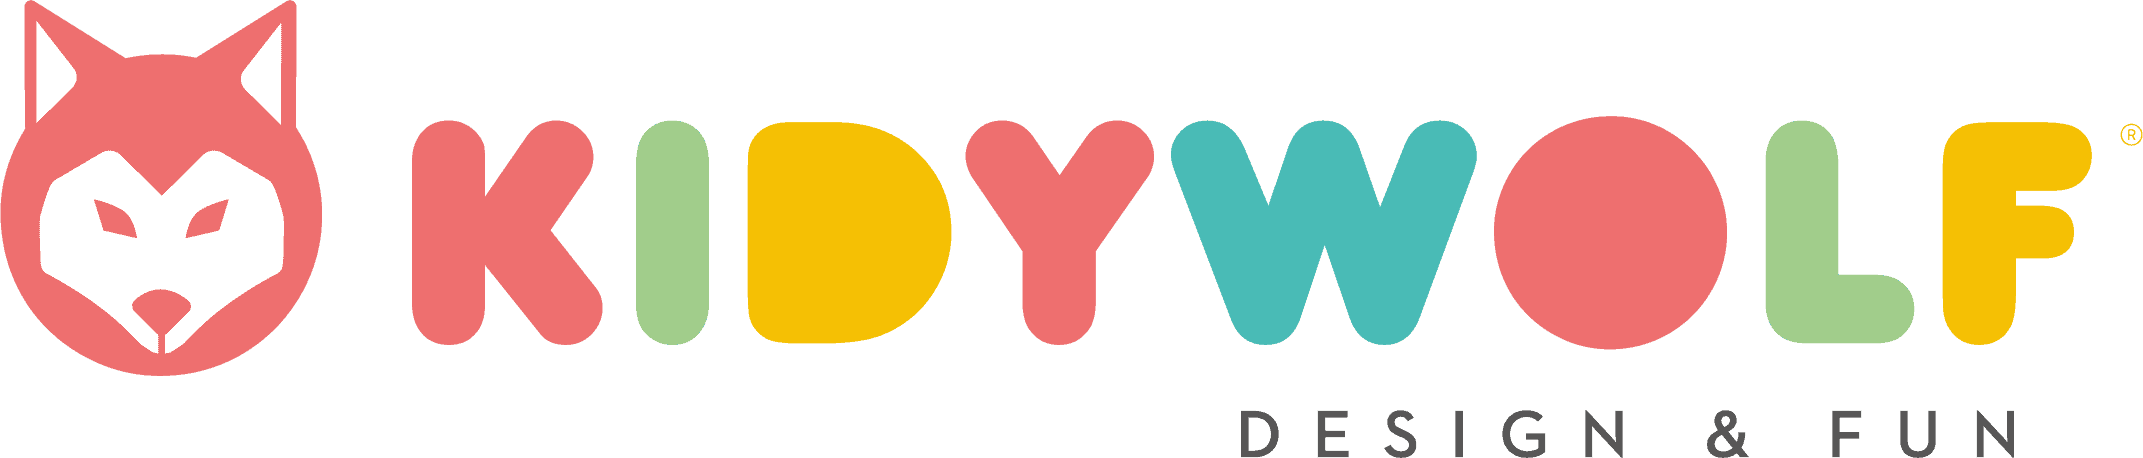 KIDYWOLF_logo